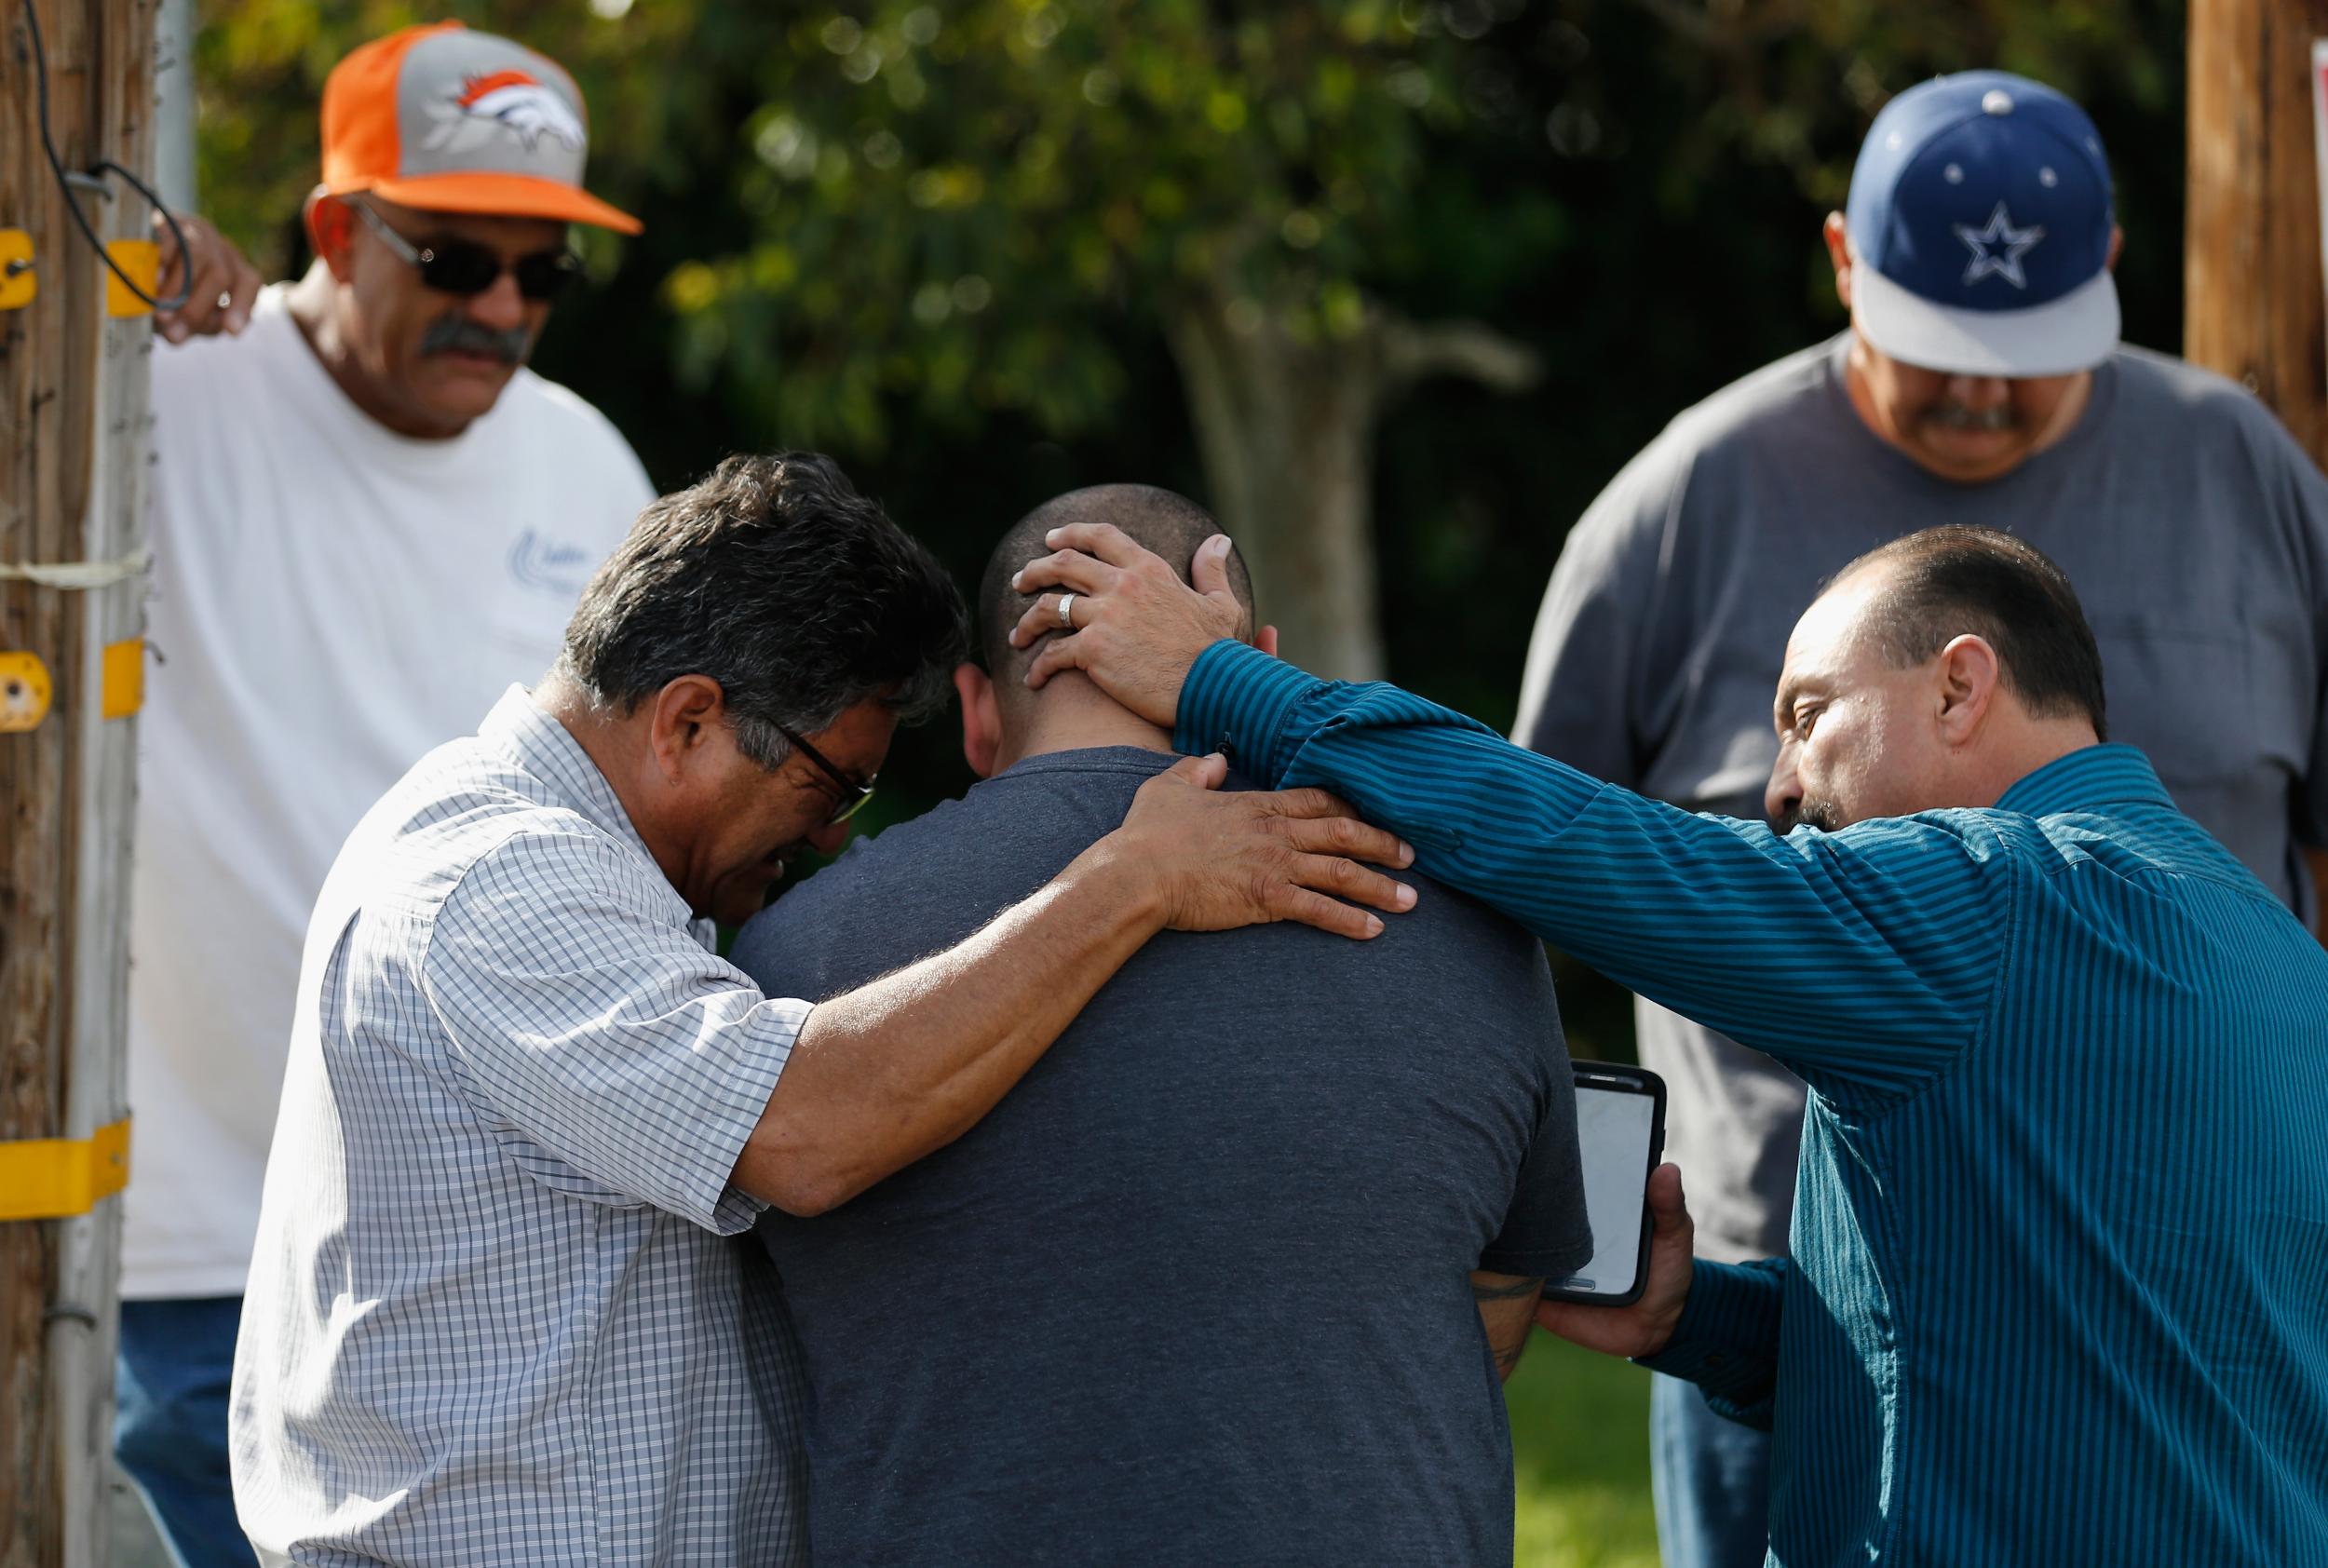 Men embrace outside the crime scene in San Bernardino.